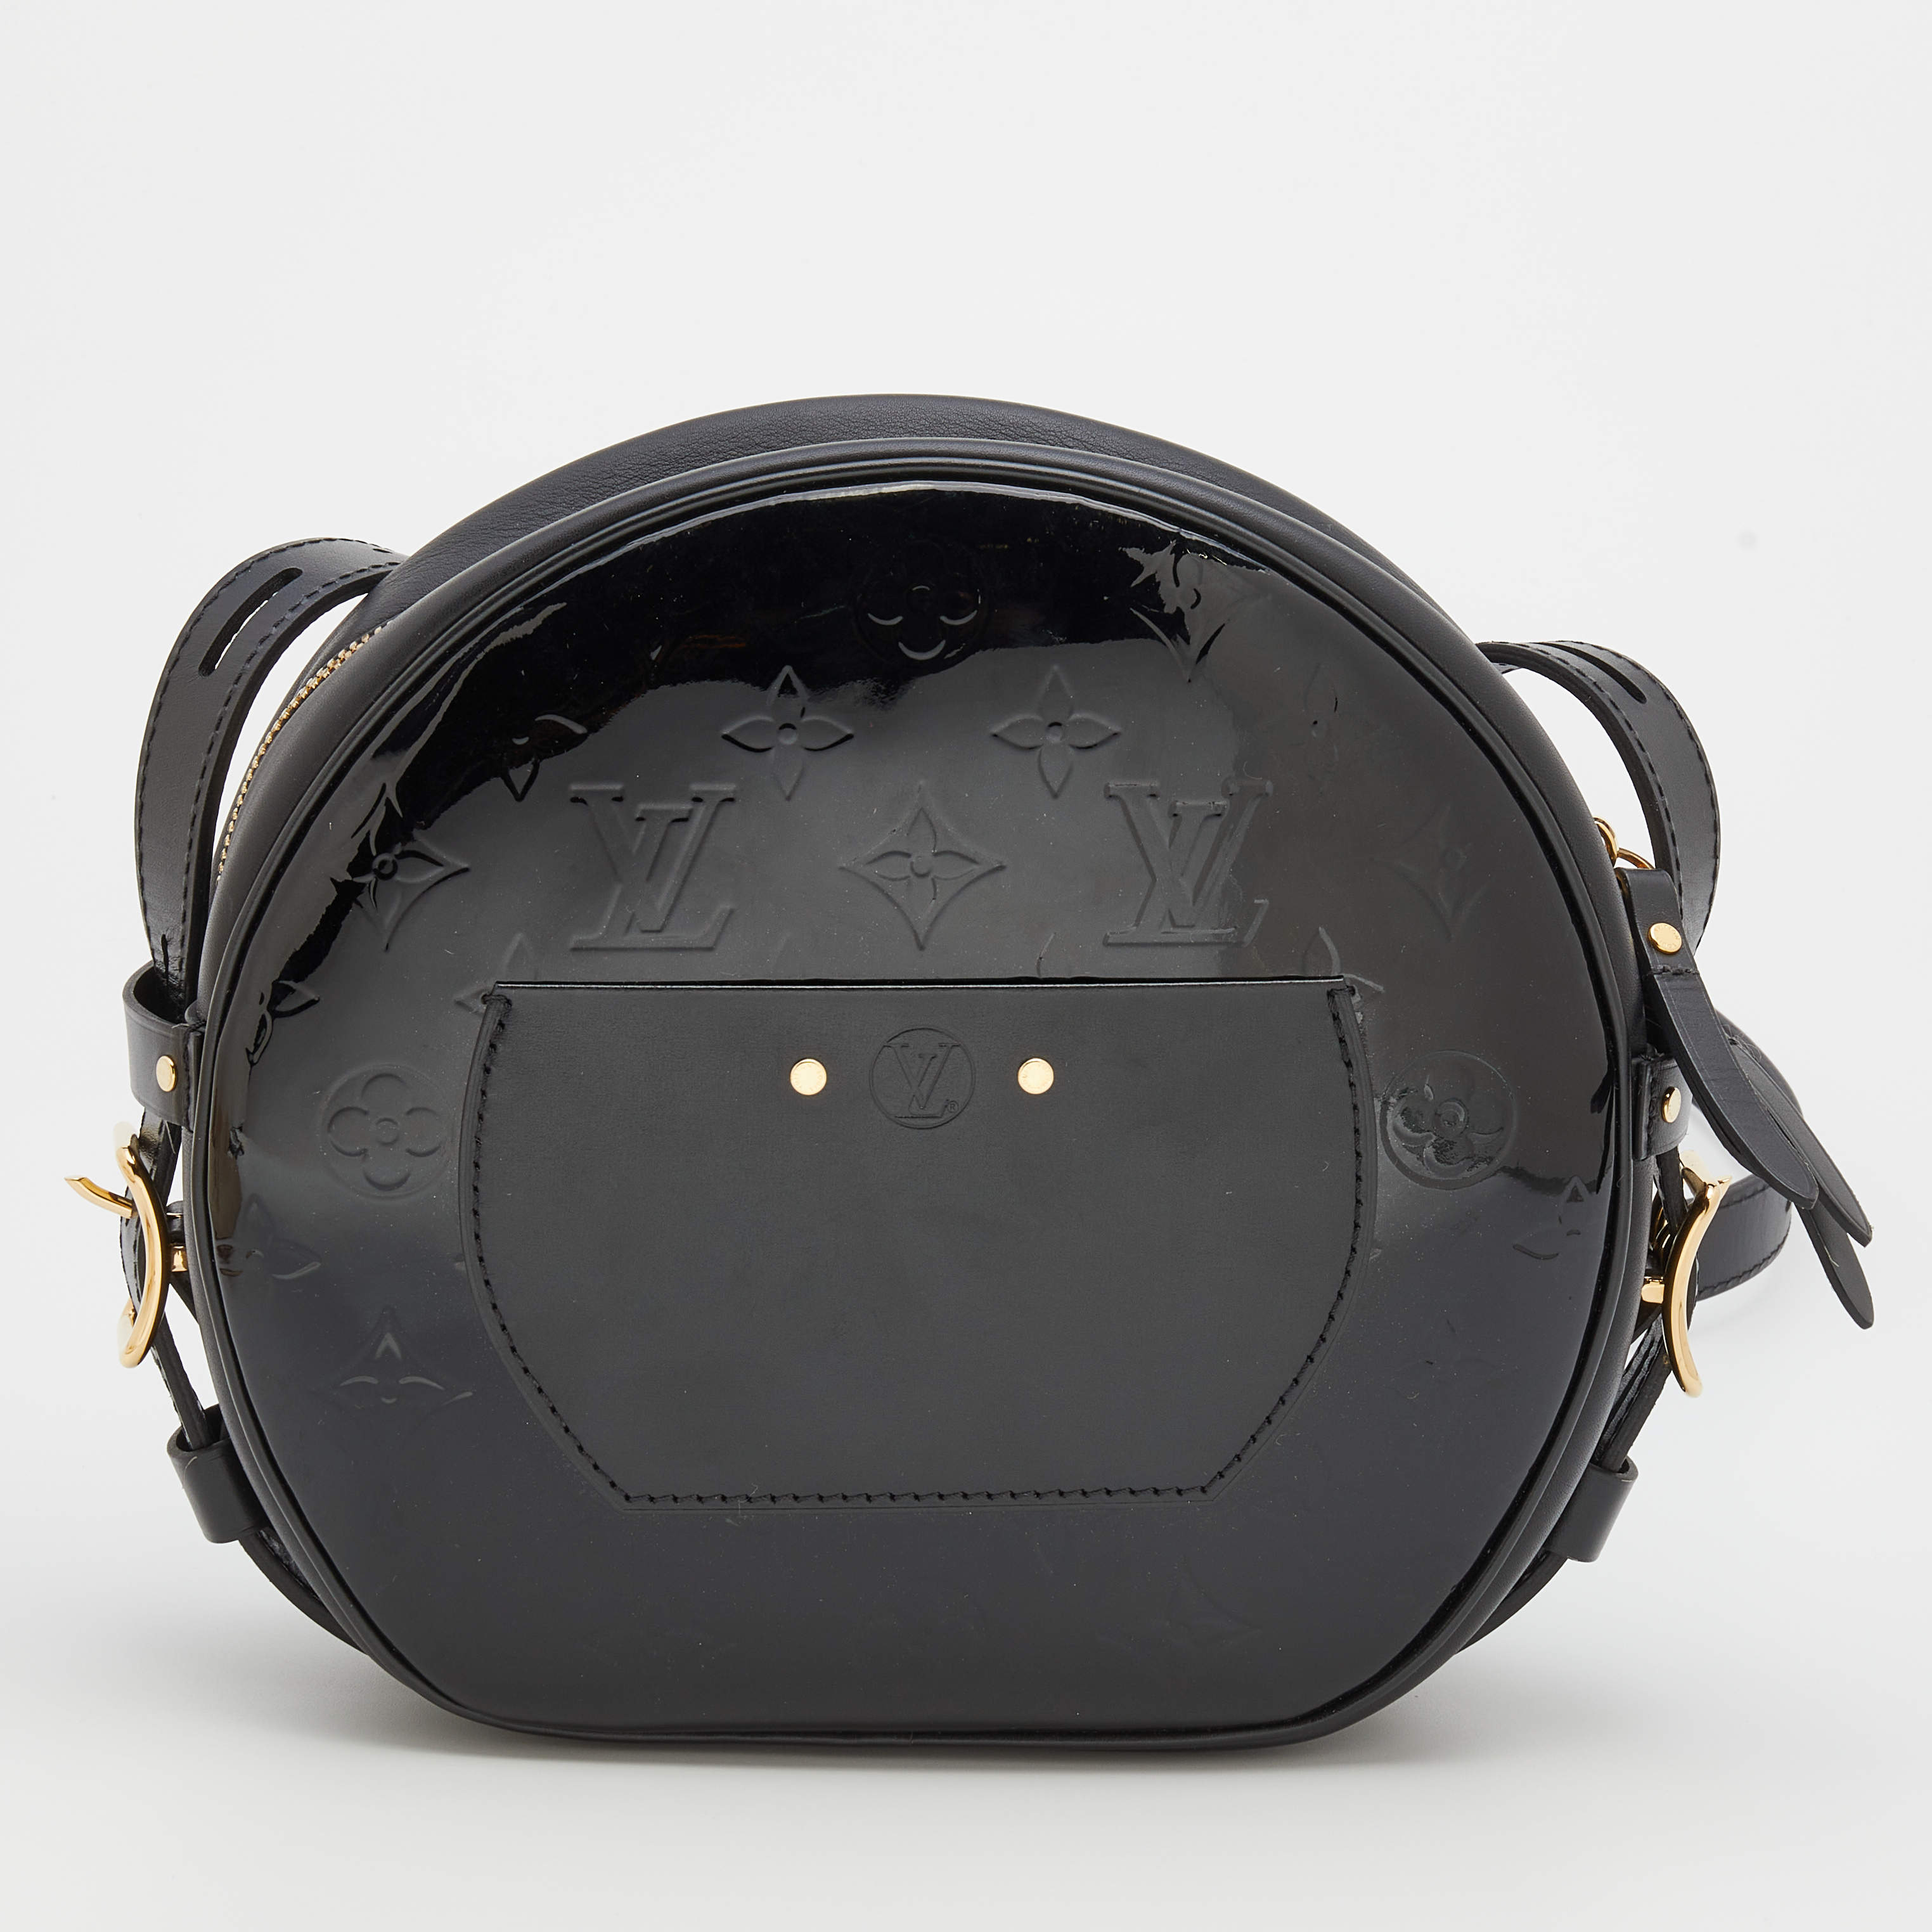 Boîte chapeau souple leather handbag Louis Vuitton Black in Leather -  27599800